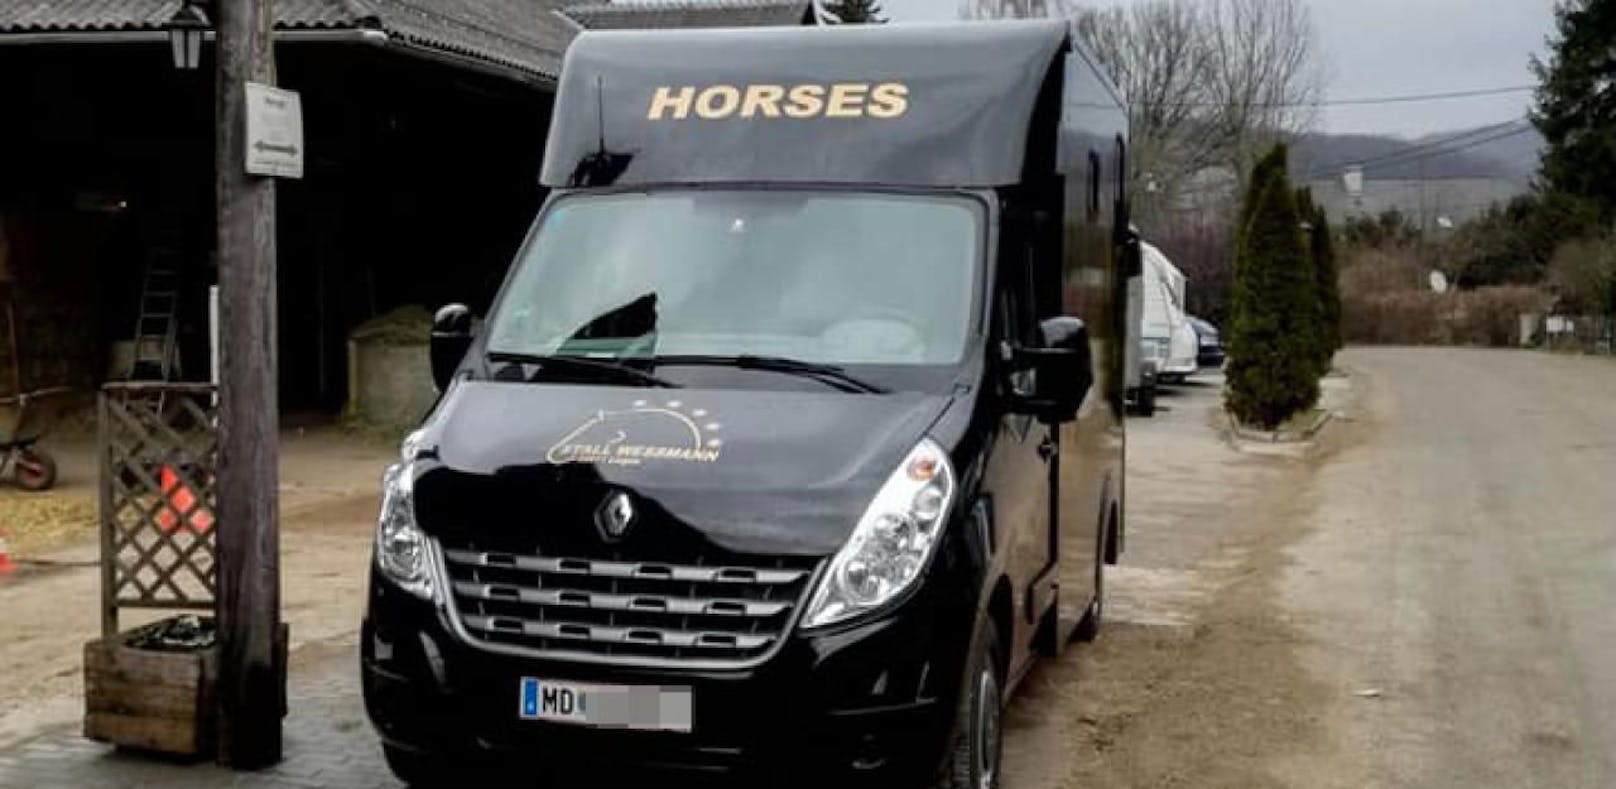 Breitenfurt: Horsebox vom Stallburschen gestohlen